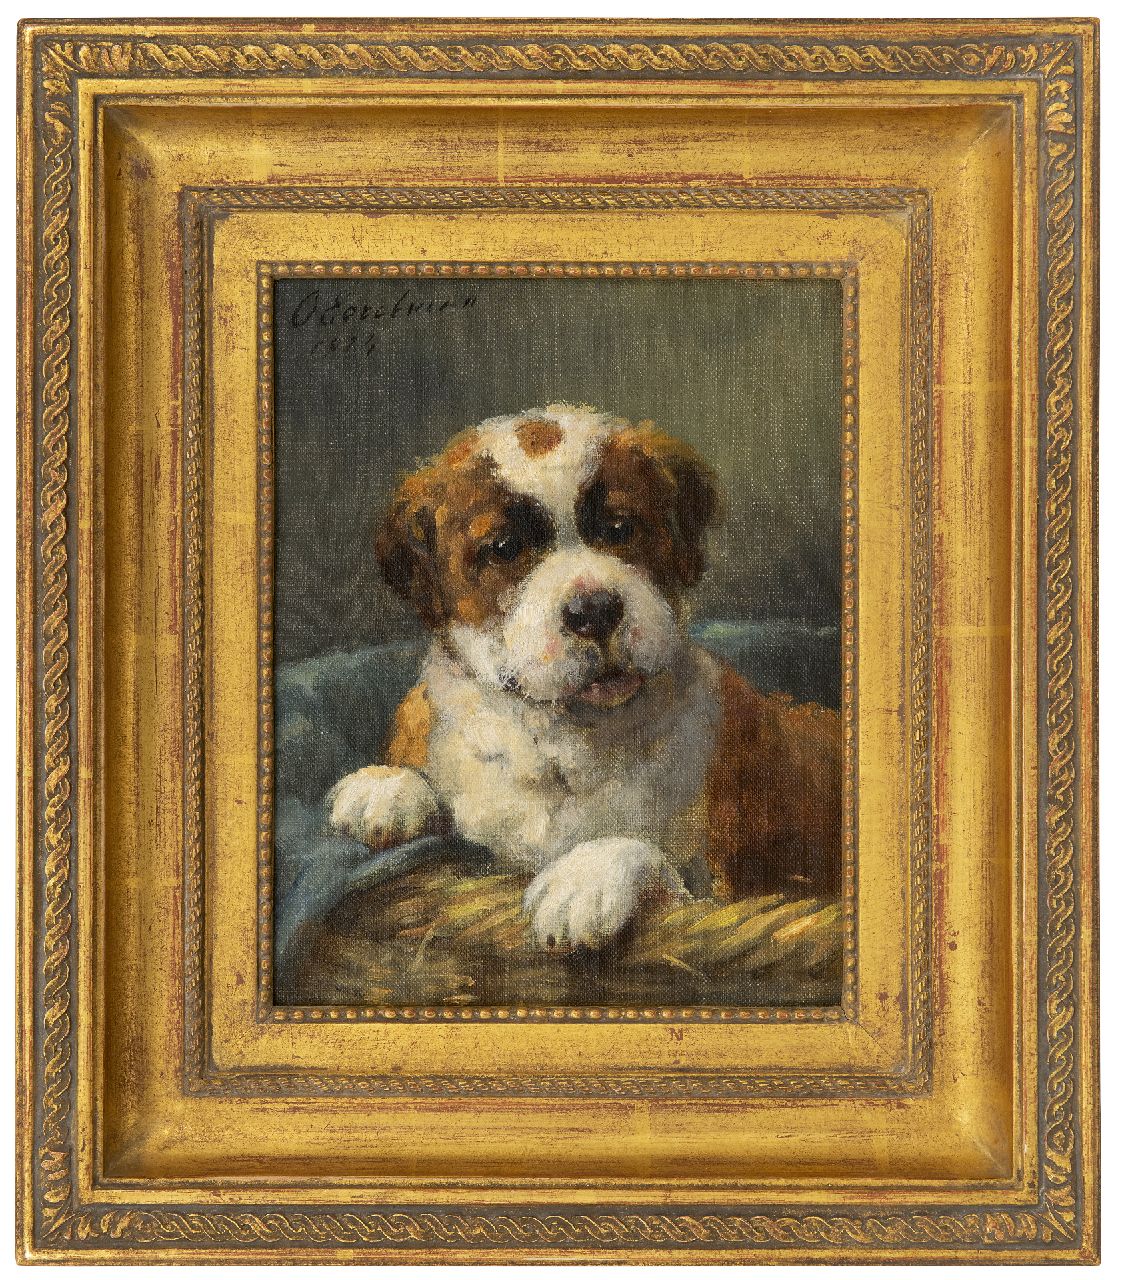 Eerelman O.  | Otto Eerelman, Sint-Bernard pup in z'n mandje, olieverf op schildersboard 23,8 x 18,8 cm, gesigneerd linksboven en gedateerd 1924